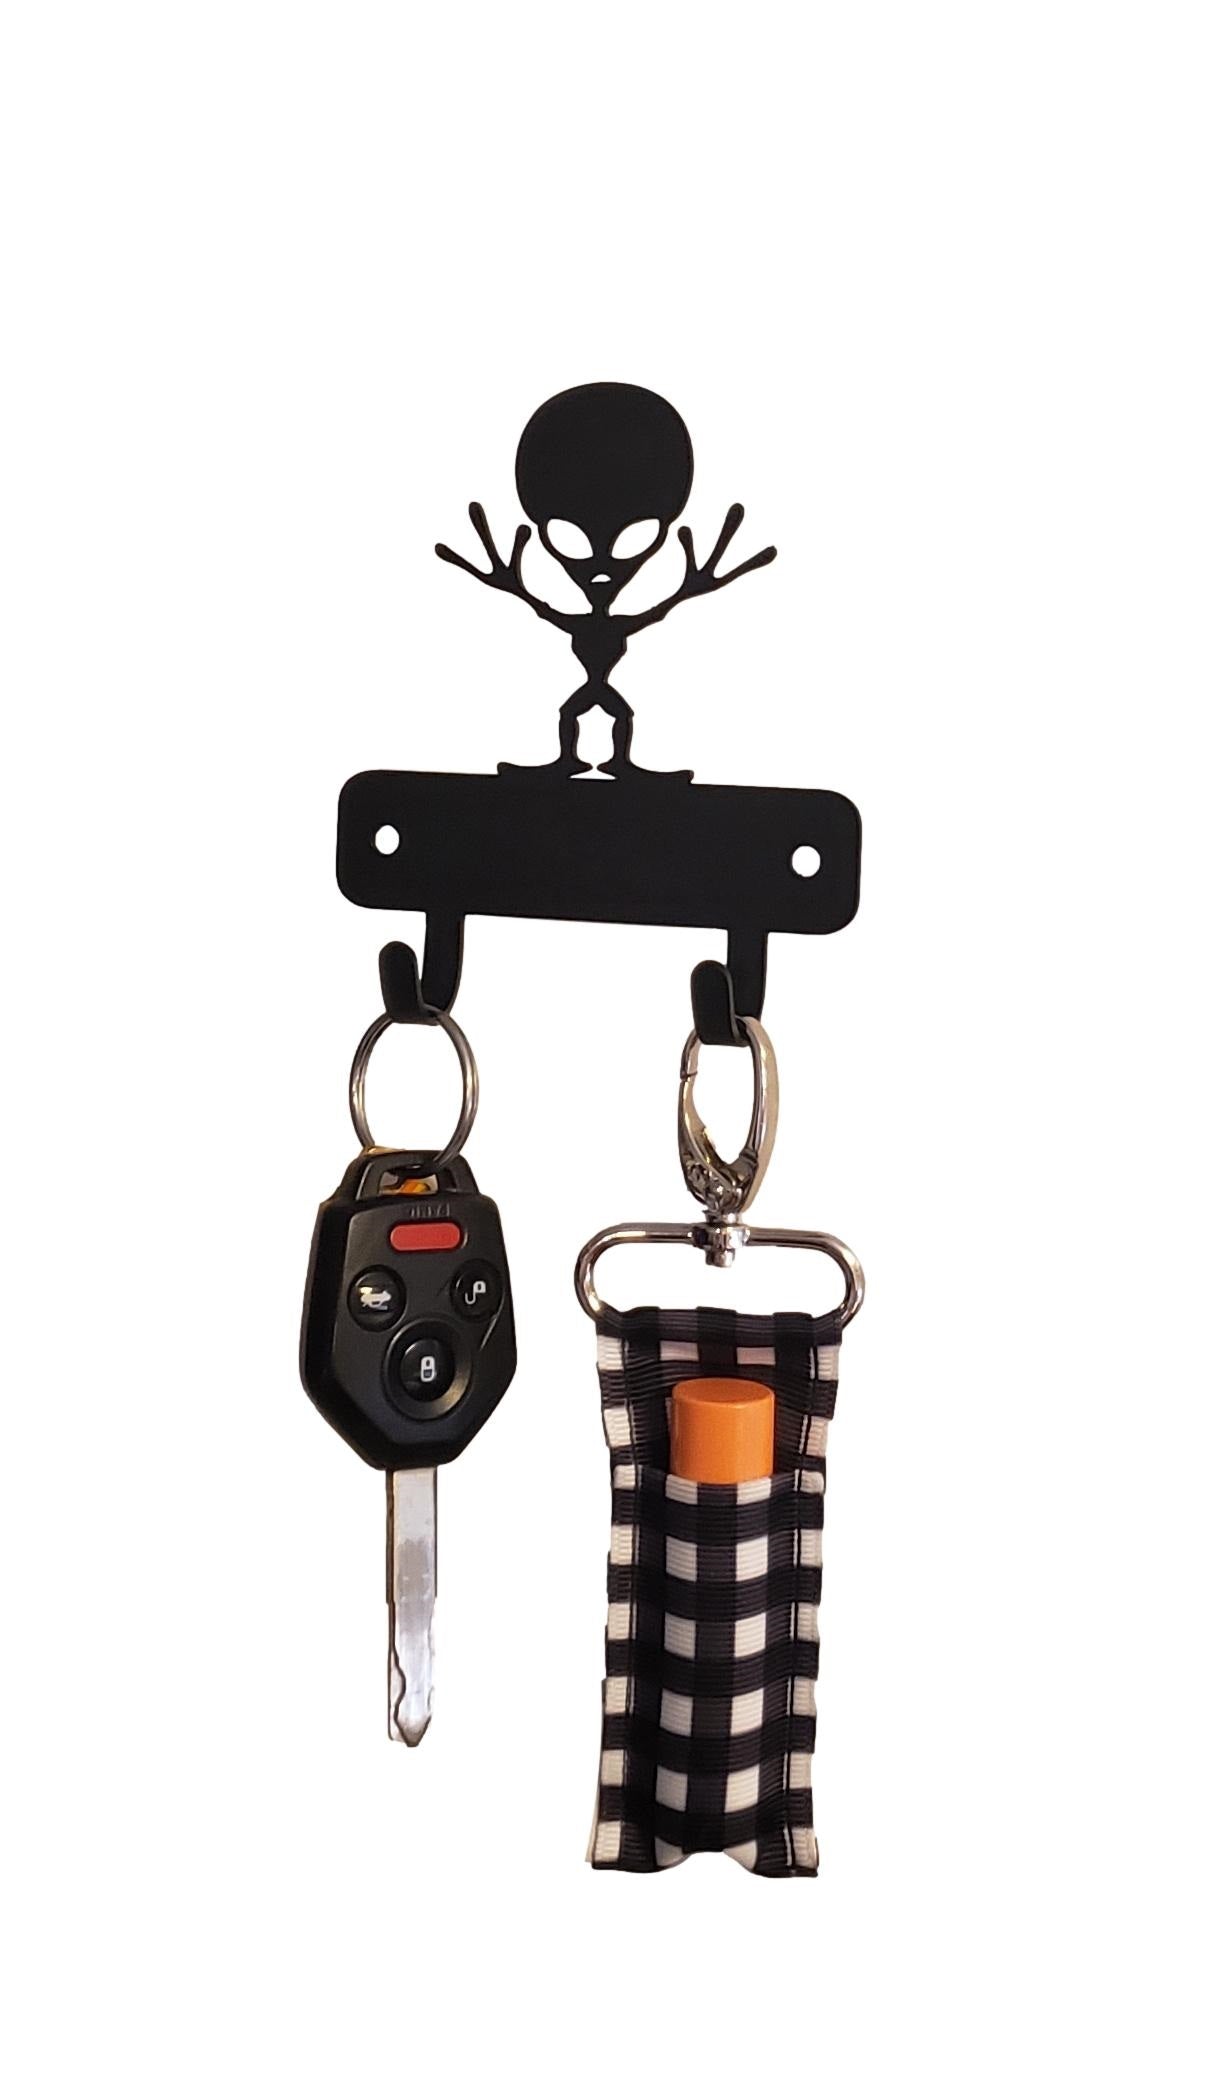 Alien Mini Key Rack for storing keys and small items - The Metal Peddler Key Rack alien, key rack, mini kr, ufo